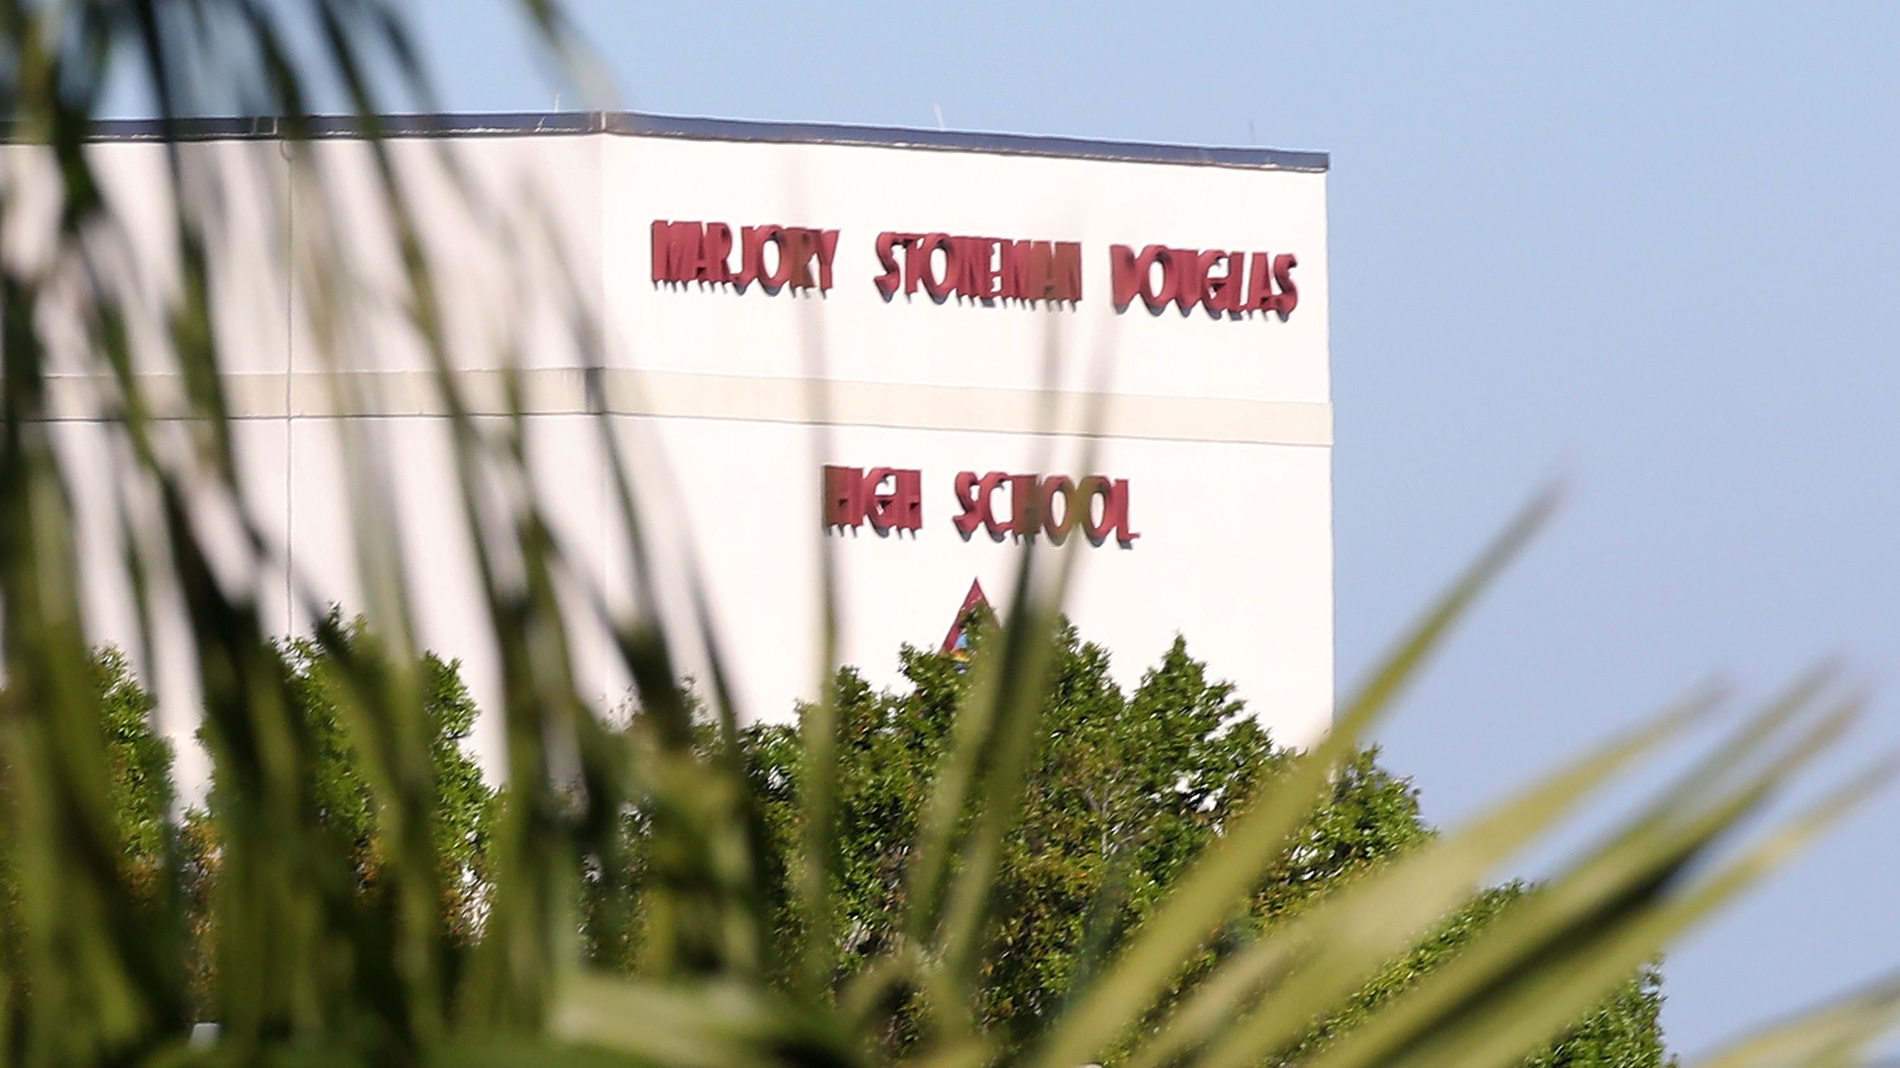 Autoridades informaron sobre las nuevas medidas de seguridad implementadas en la escuela Marjory Stoneman Douglas